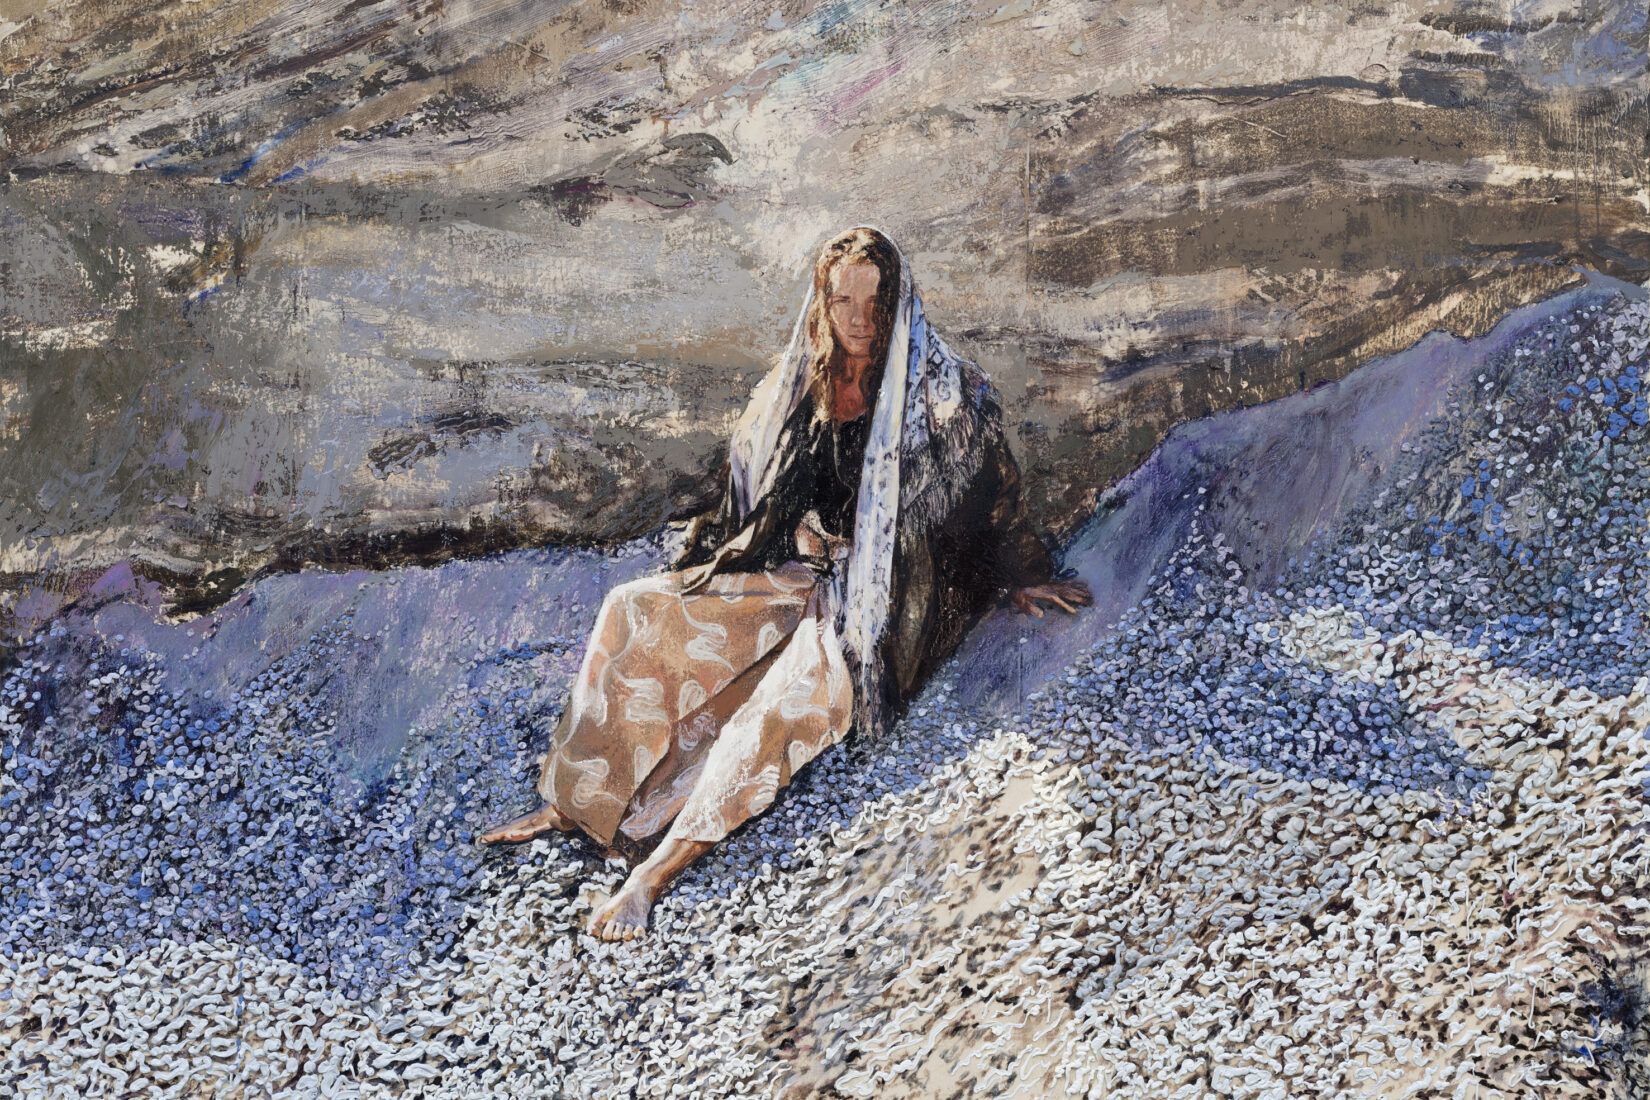 Kvinna med en sjal runtom sig sitter på en strand med musslor.